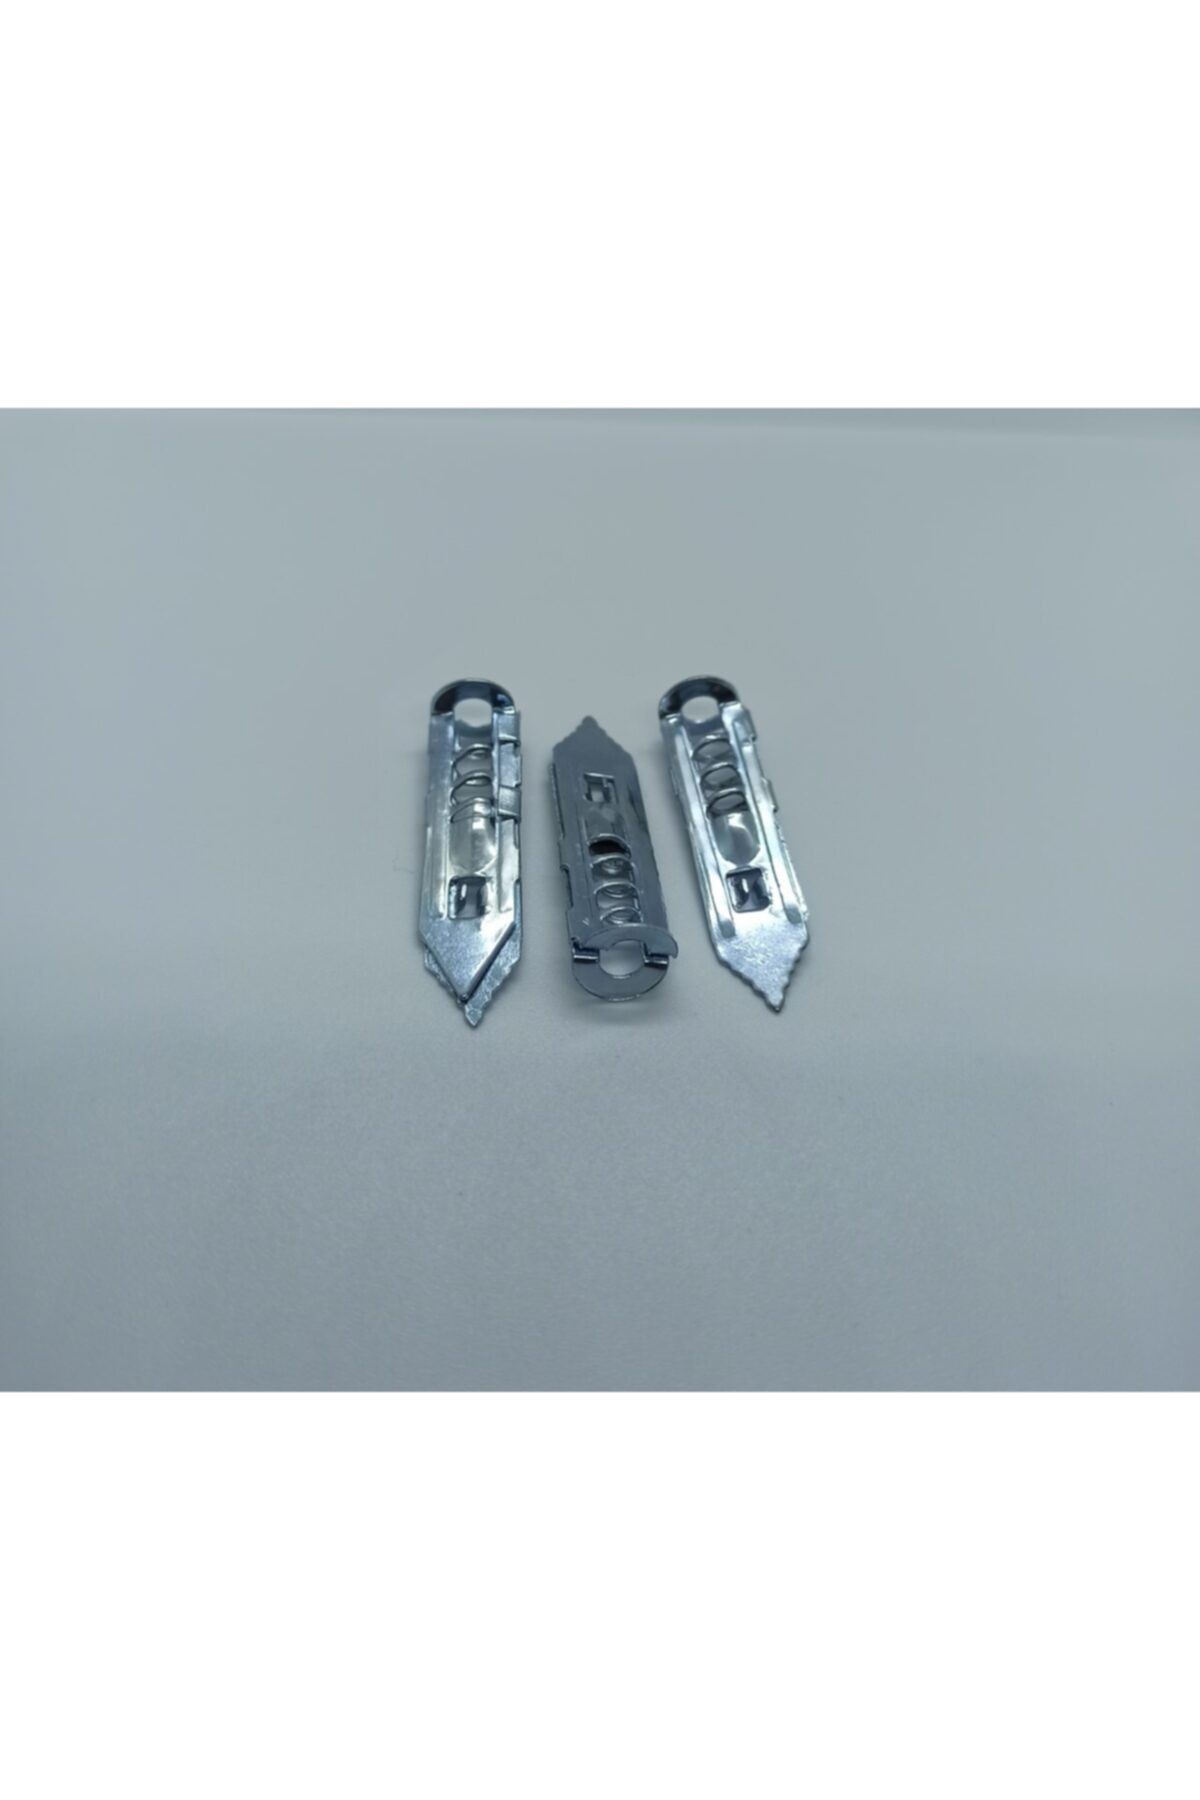 Selectron Uzun Del Çak Kılçık Metal Alçıpan Dübeli 500 Adet